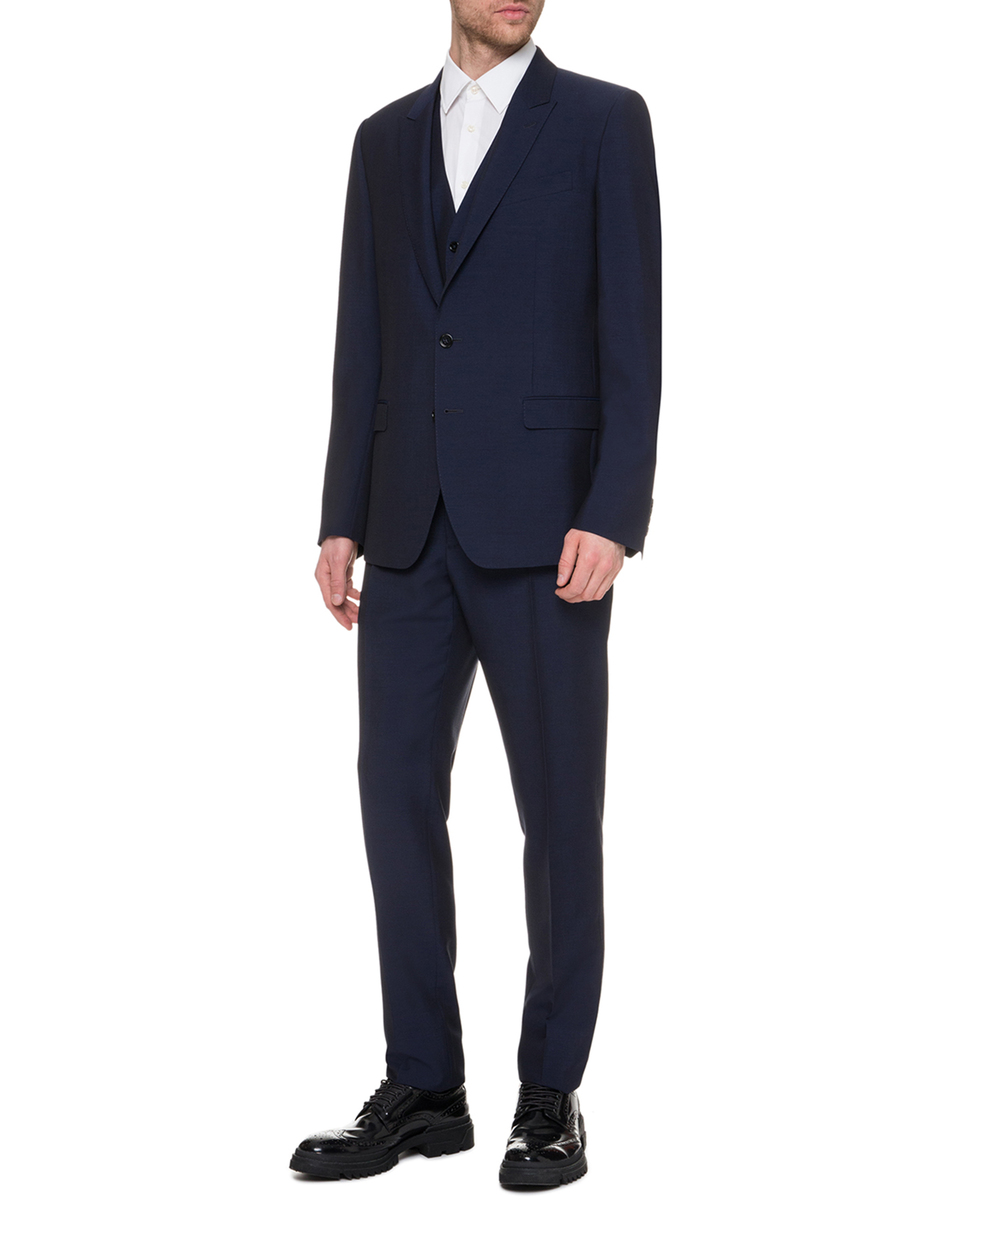 Шерстяной костюм Martini (пиджак, жилет, брюки) Dolce&Gabbana GK3XMT-FU3PU, темно-синий цвет • Купить в интернет-магазине Kameron